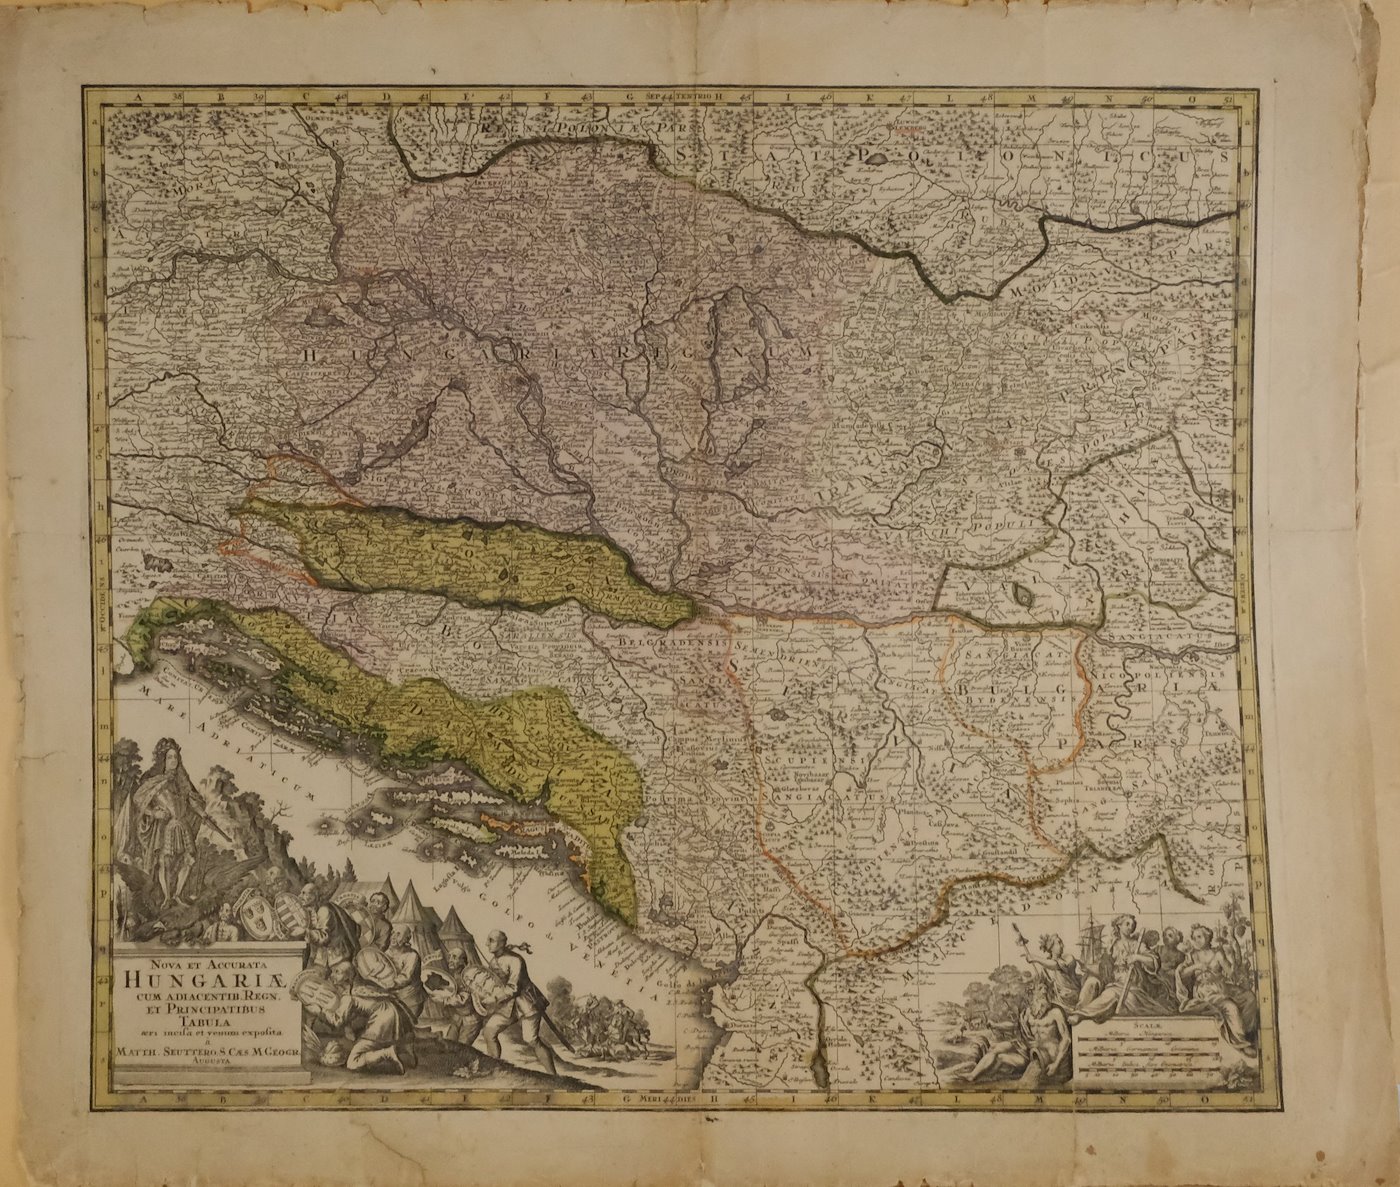 Matthias Seutter - Mapa Uherska a přilehlých zemí na konci 17. století